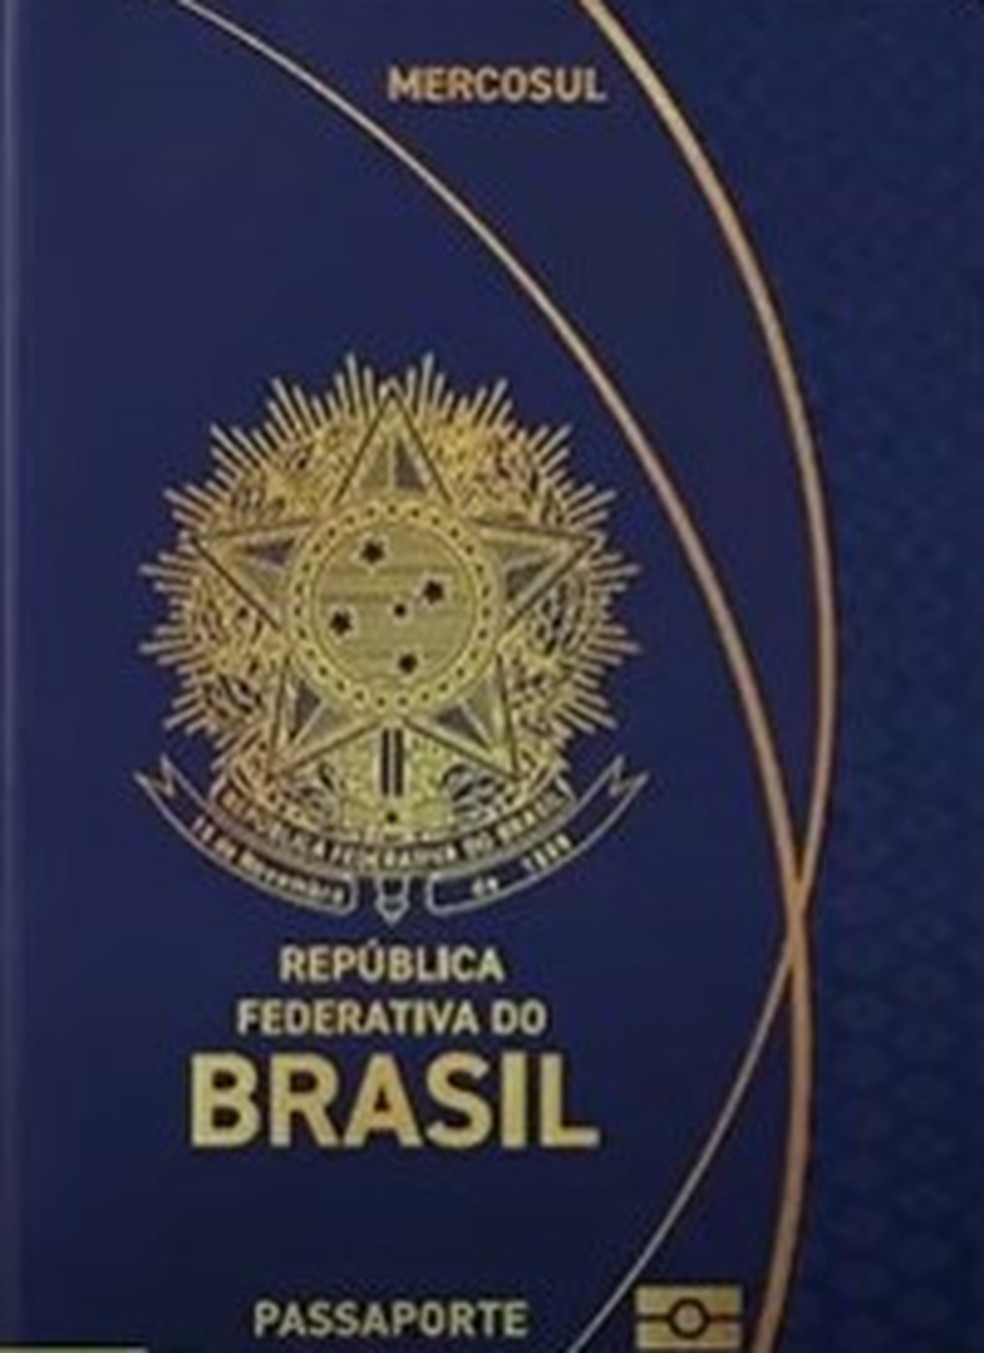 Imagem da capa do novo passaporte &amp;mdash; Foto: Reprodu&amp;ccedil;&amp;atilde;o